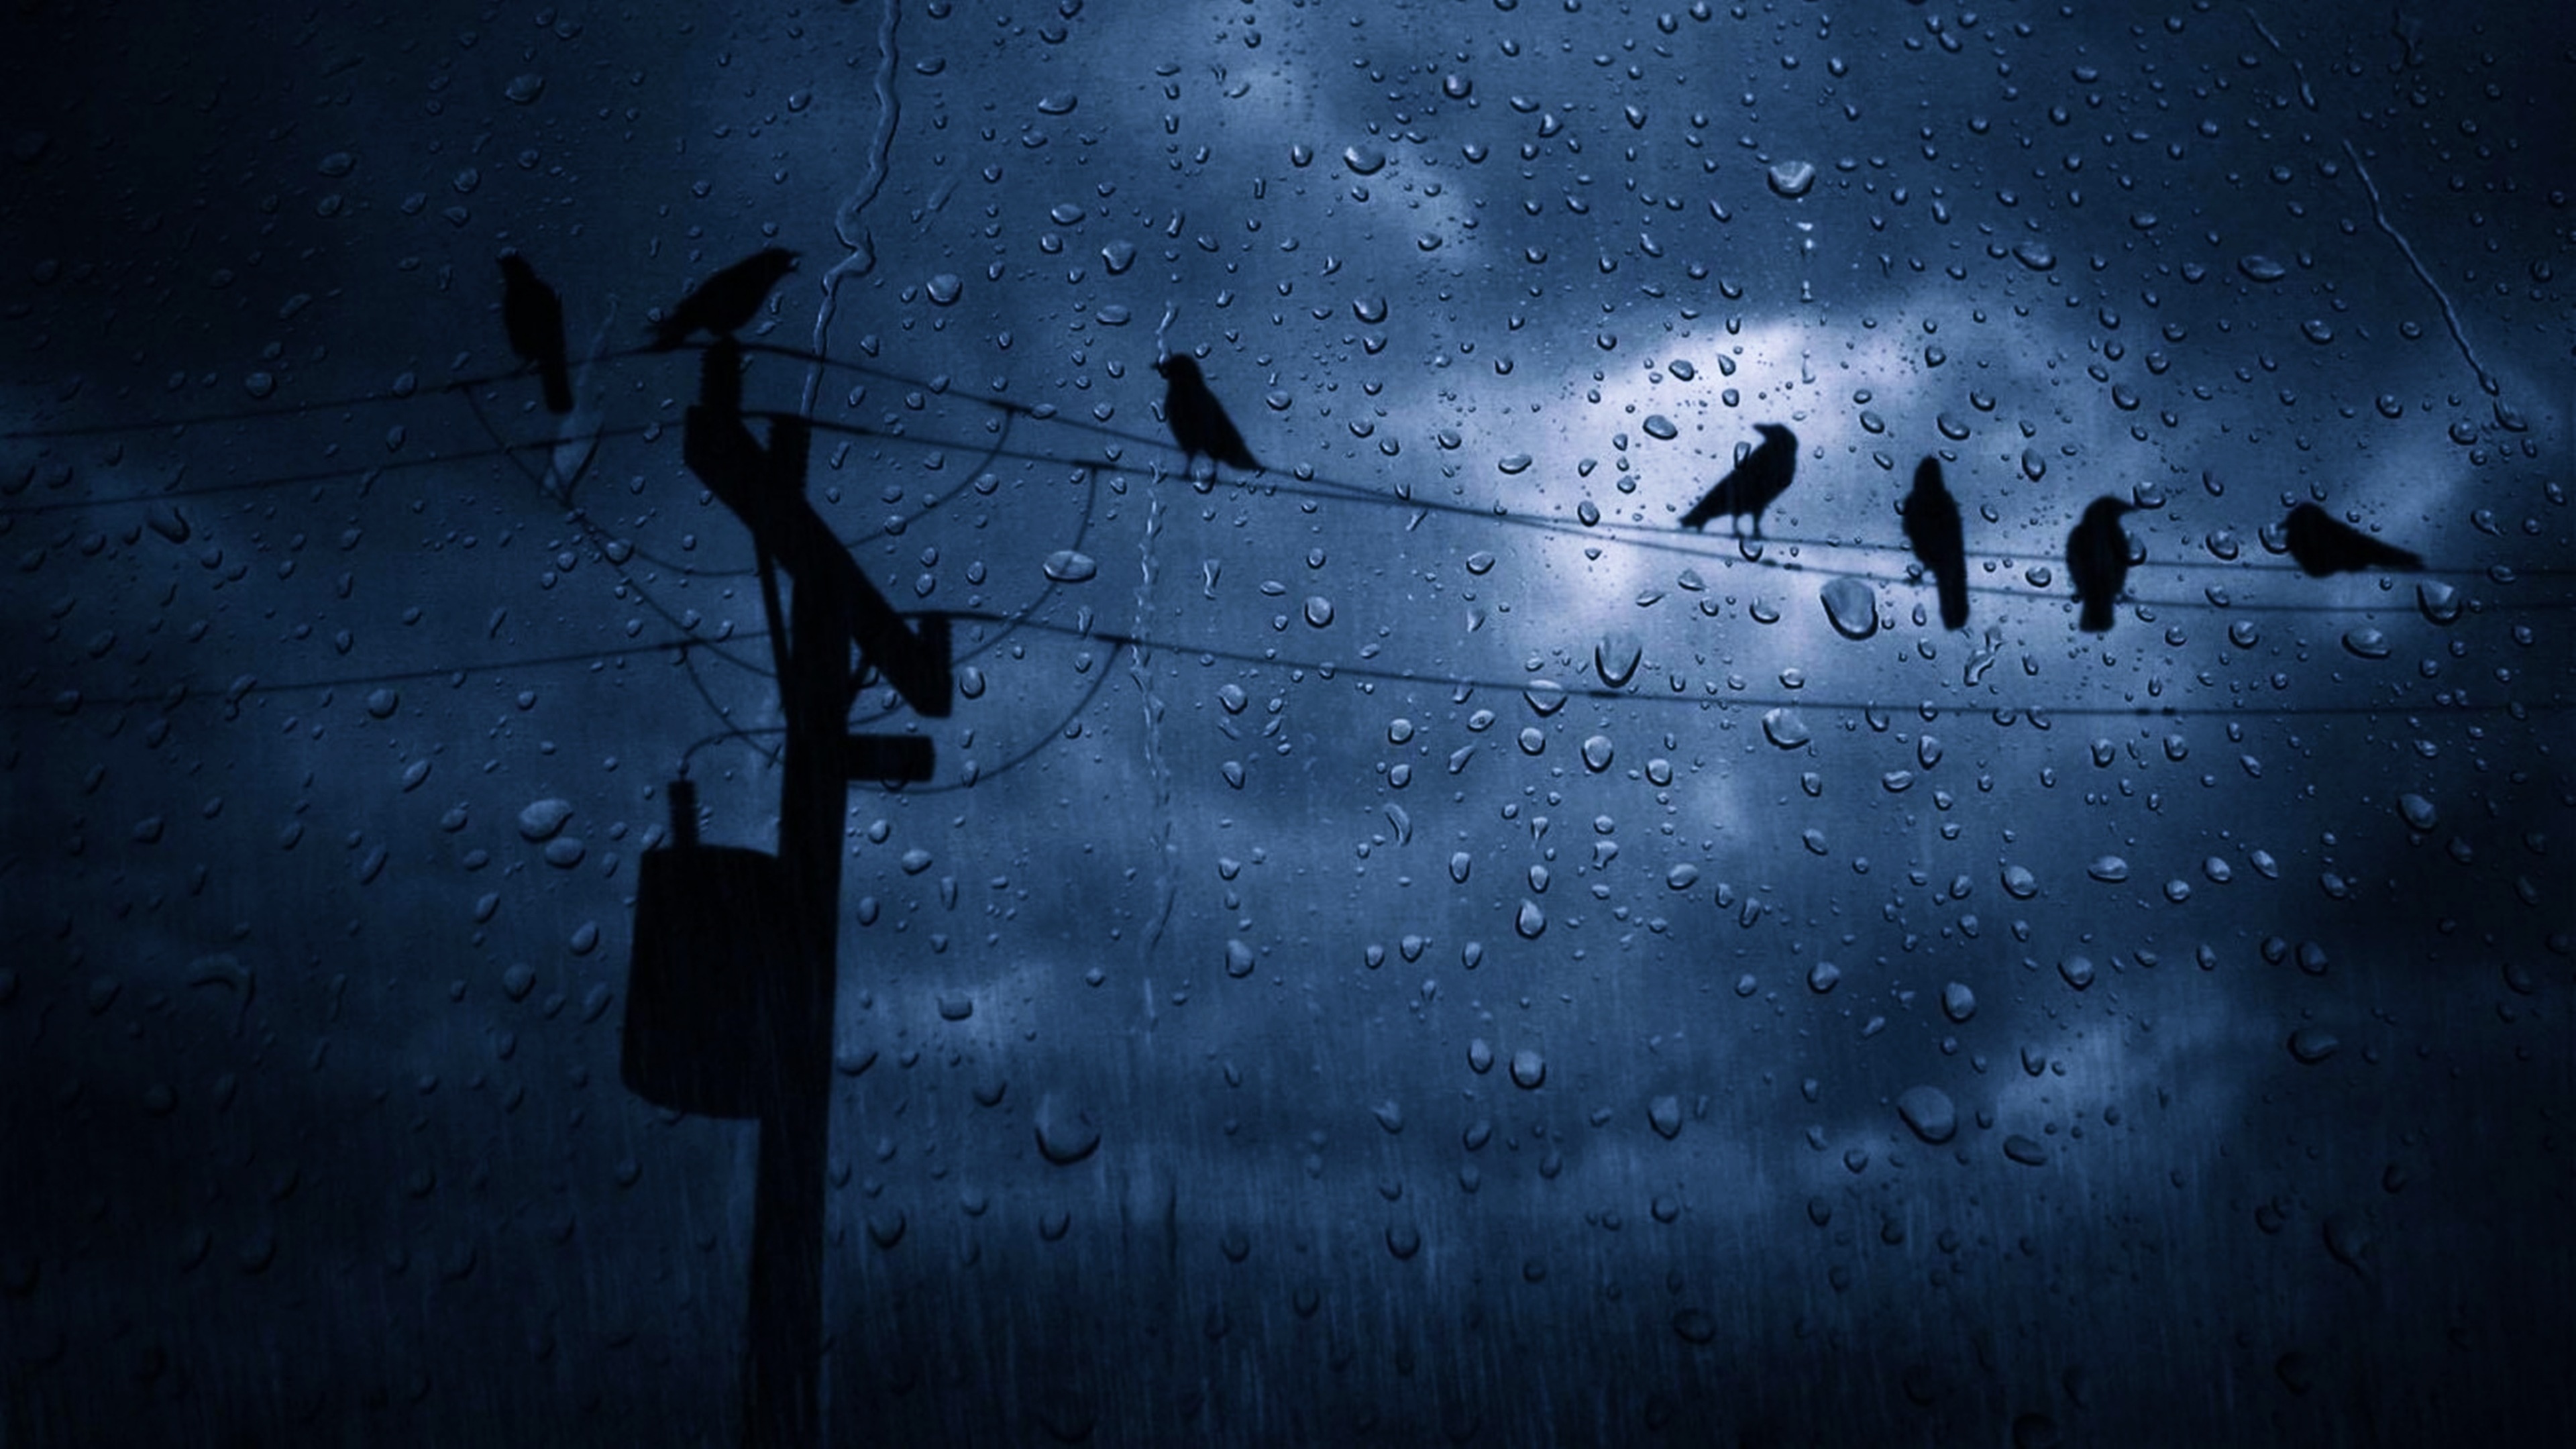 HD desktop wallpaper: Sky, Rain, Dark, Bird, Cloud, Photography, Water Drop  download free picture #686735